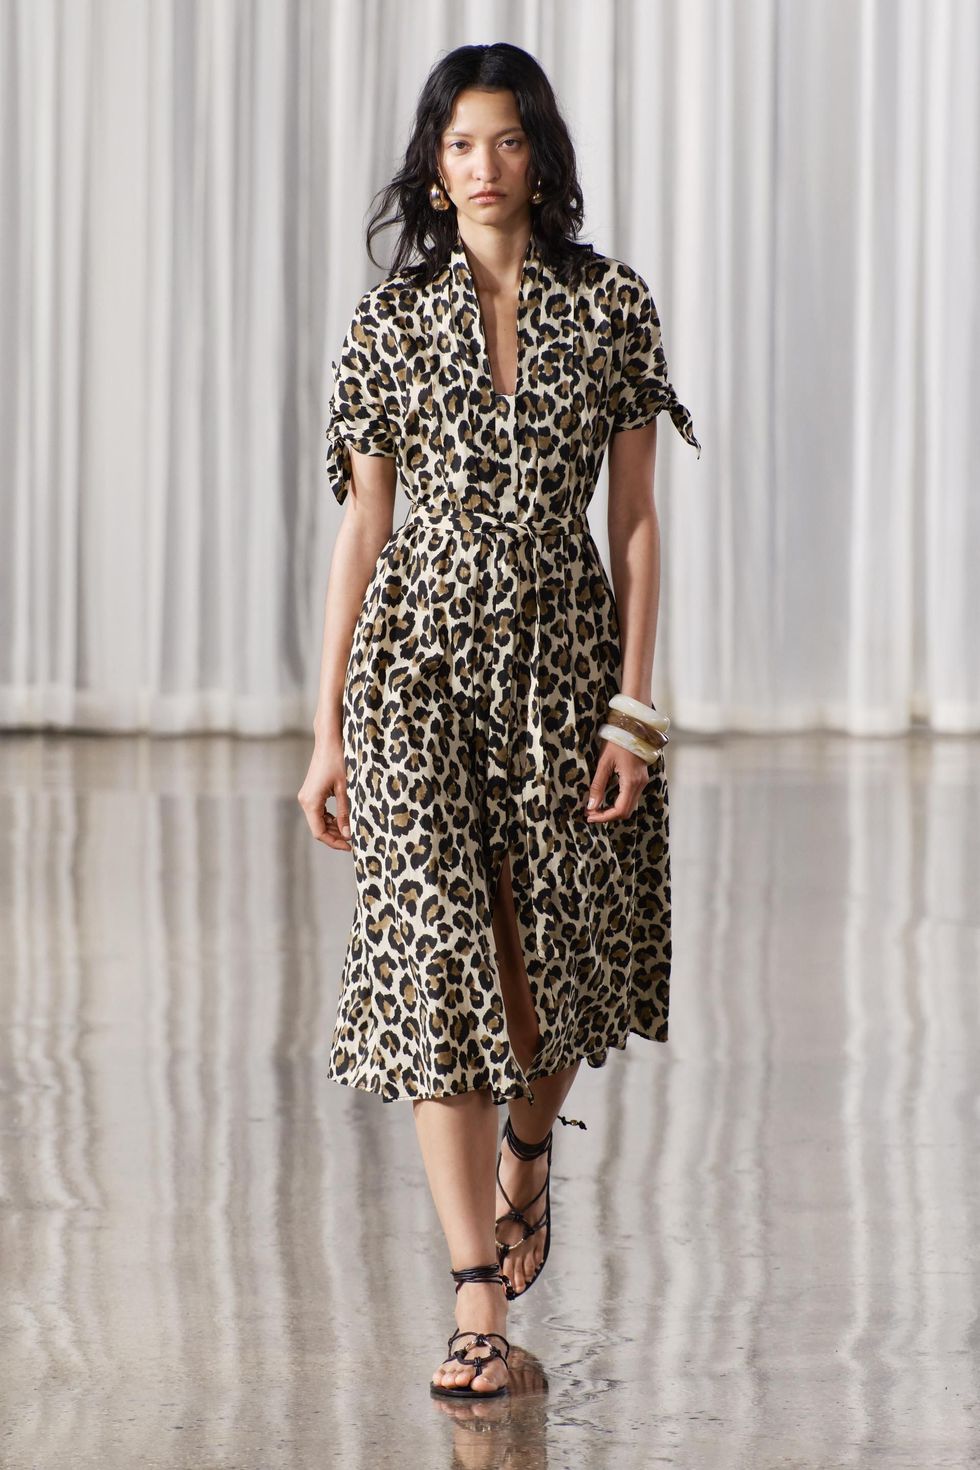 Vestido estampado leopardo